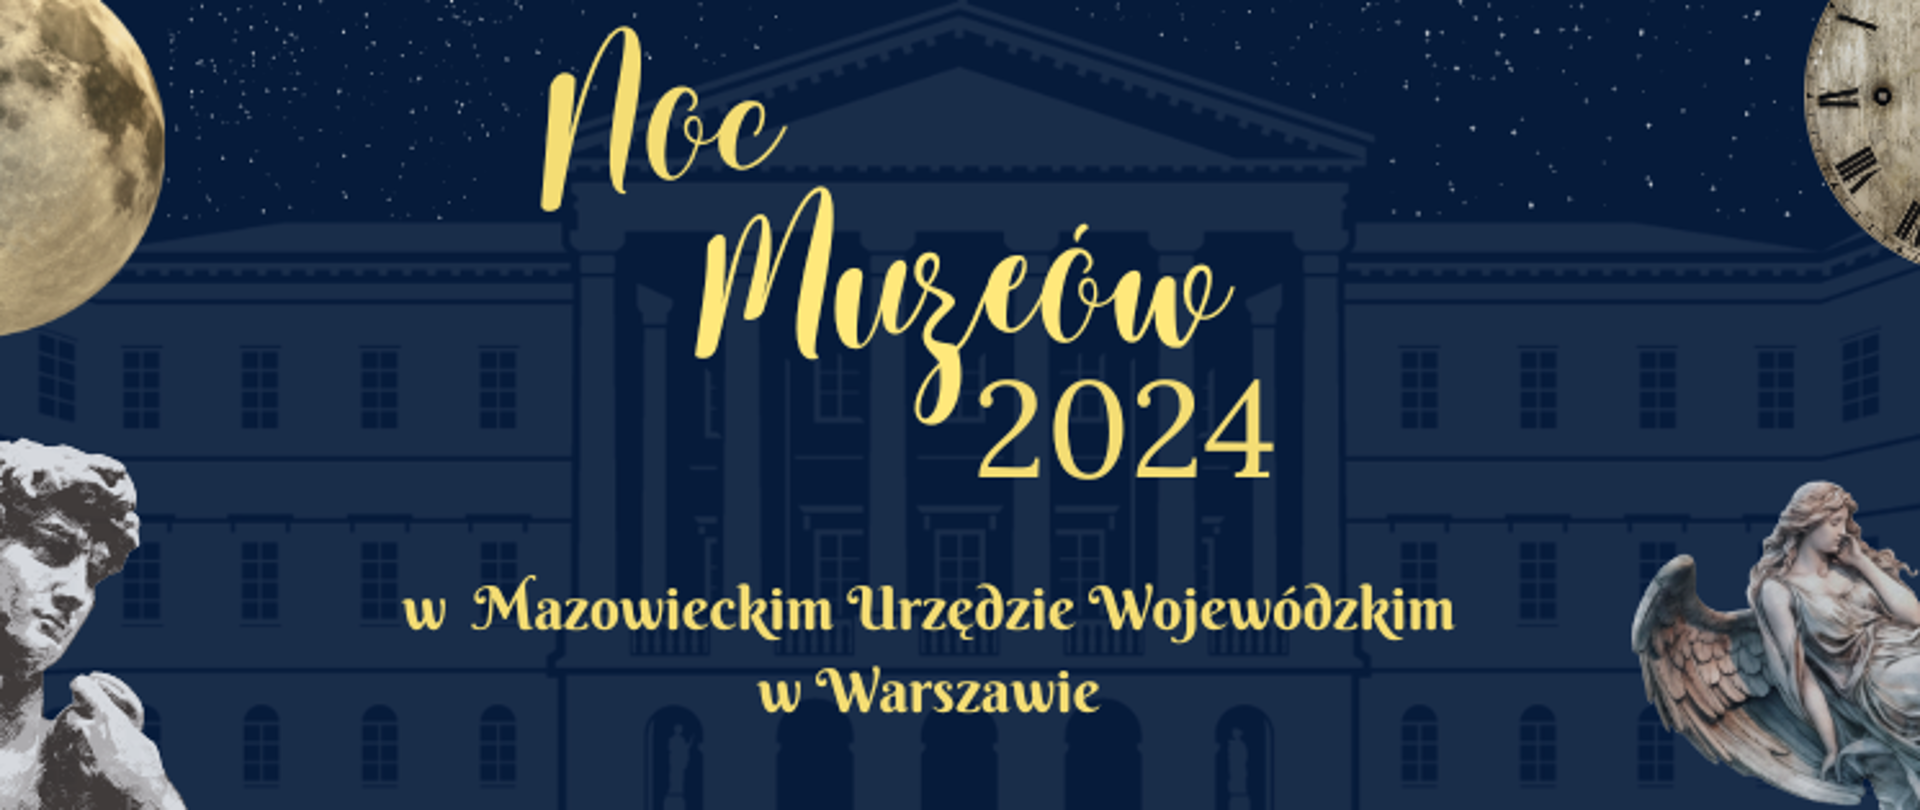 Zapraszamy na Noc Muzeów w Mazowieckim Urzędzie Wojewódzkim w Warszawie